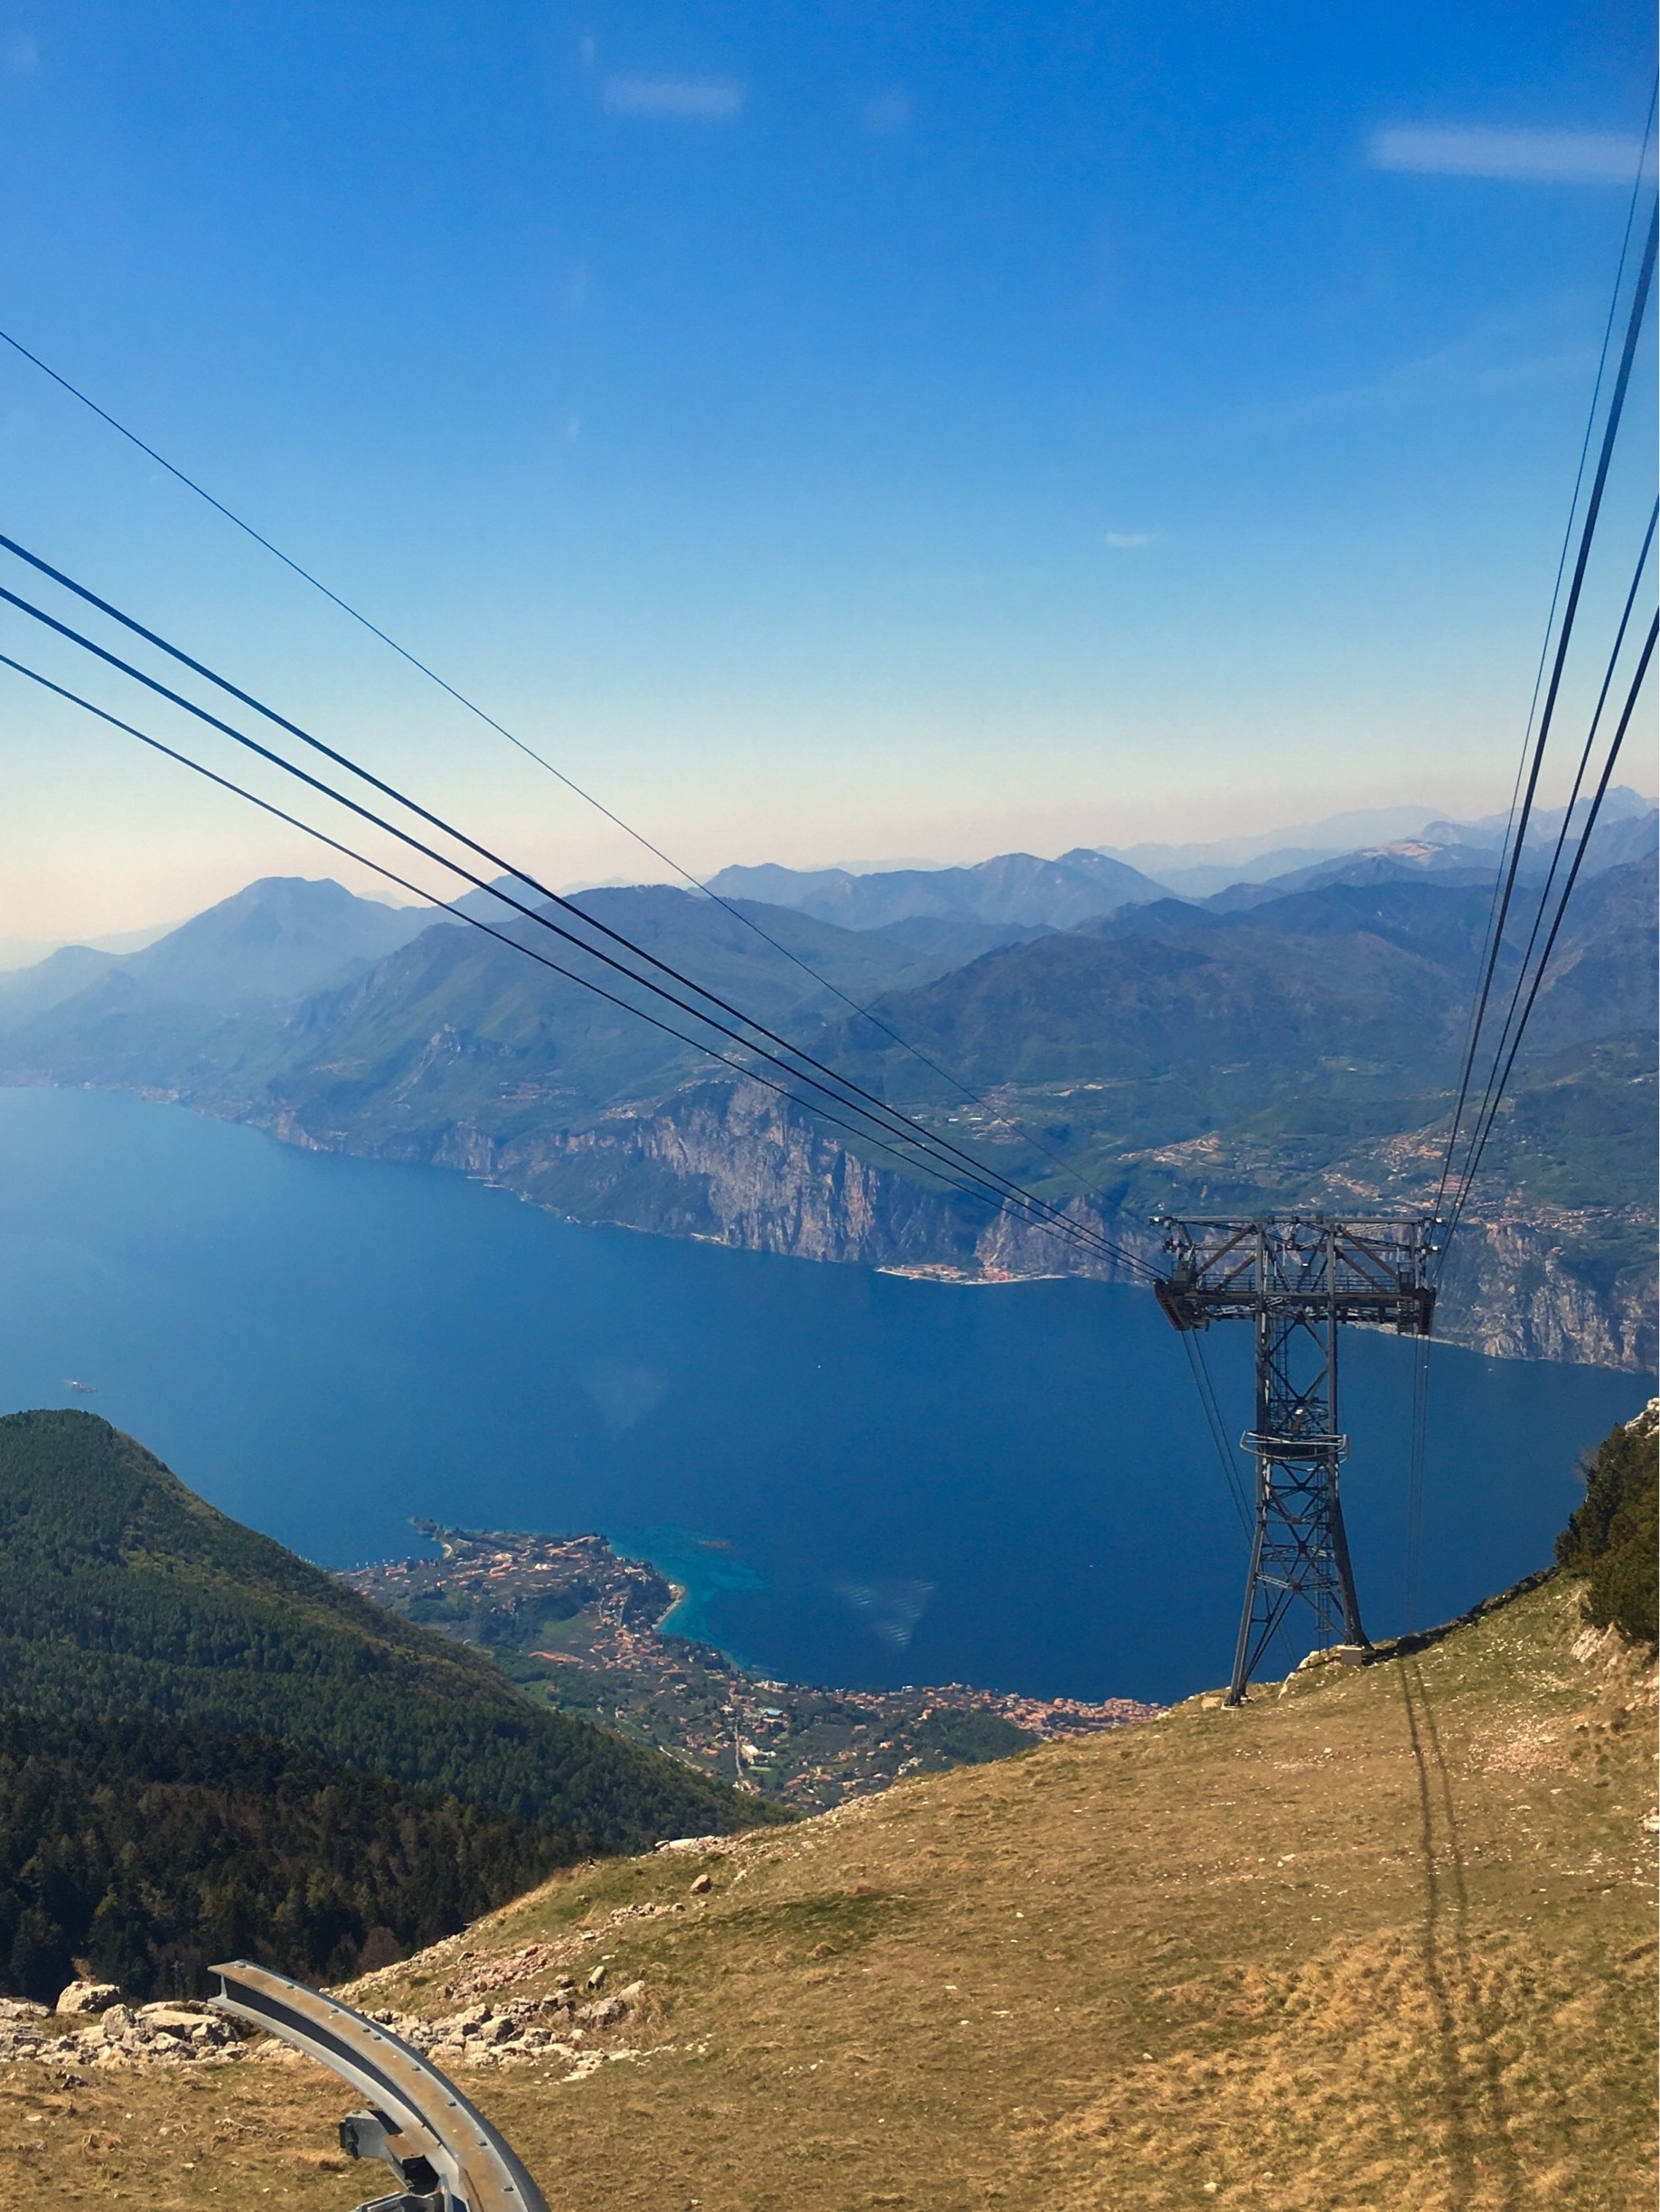 Going up on Monte Baldo with the Funivia Monte Baldo cable car, view over Lake Garda
